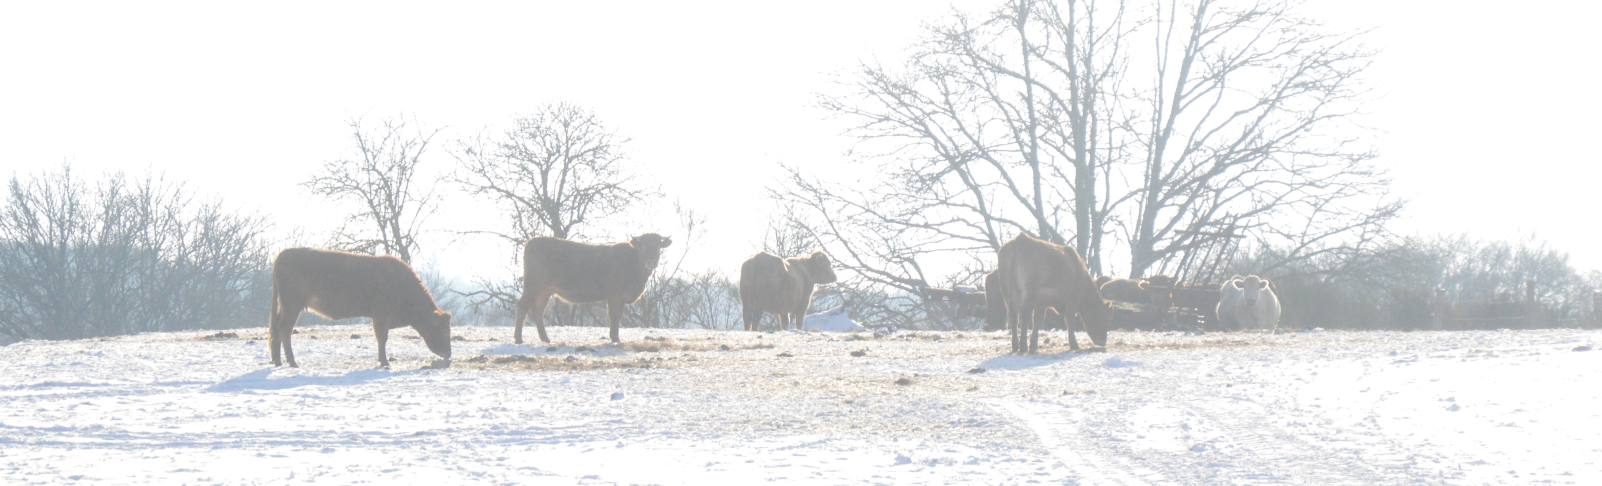 vaches dans la neige